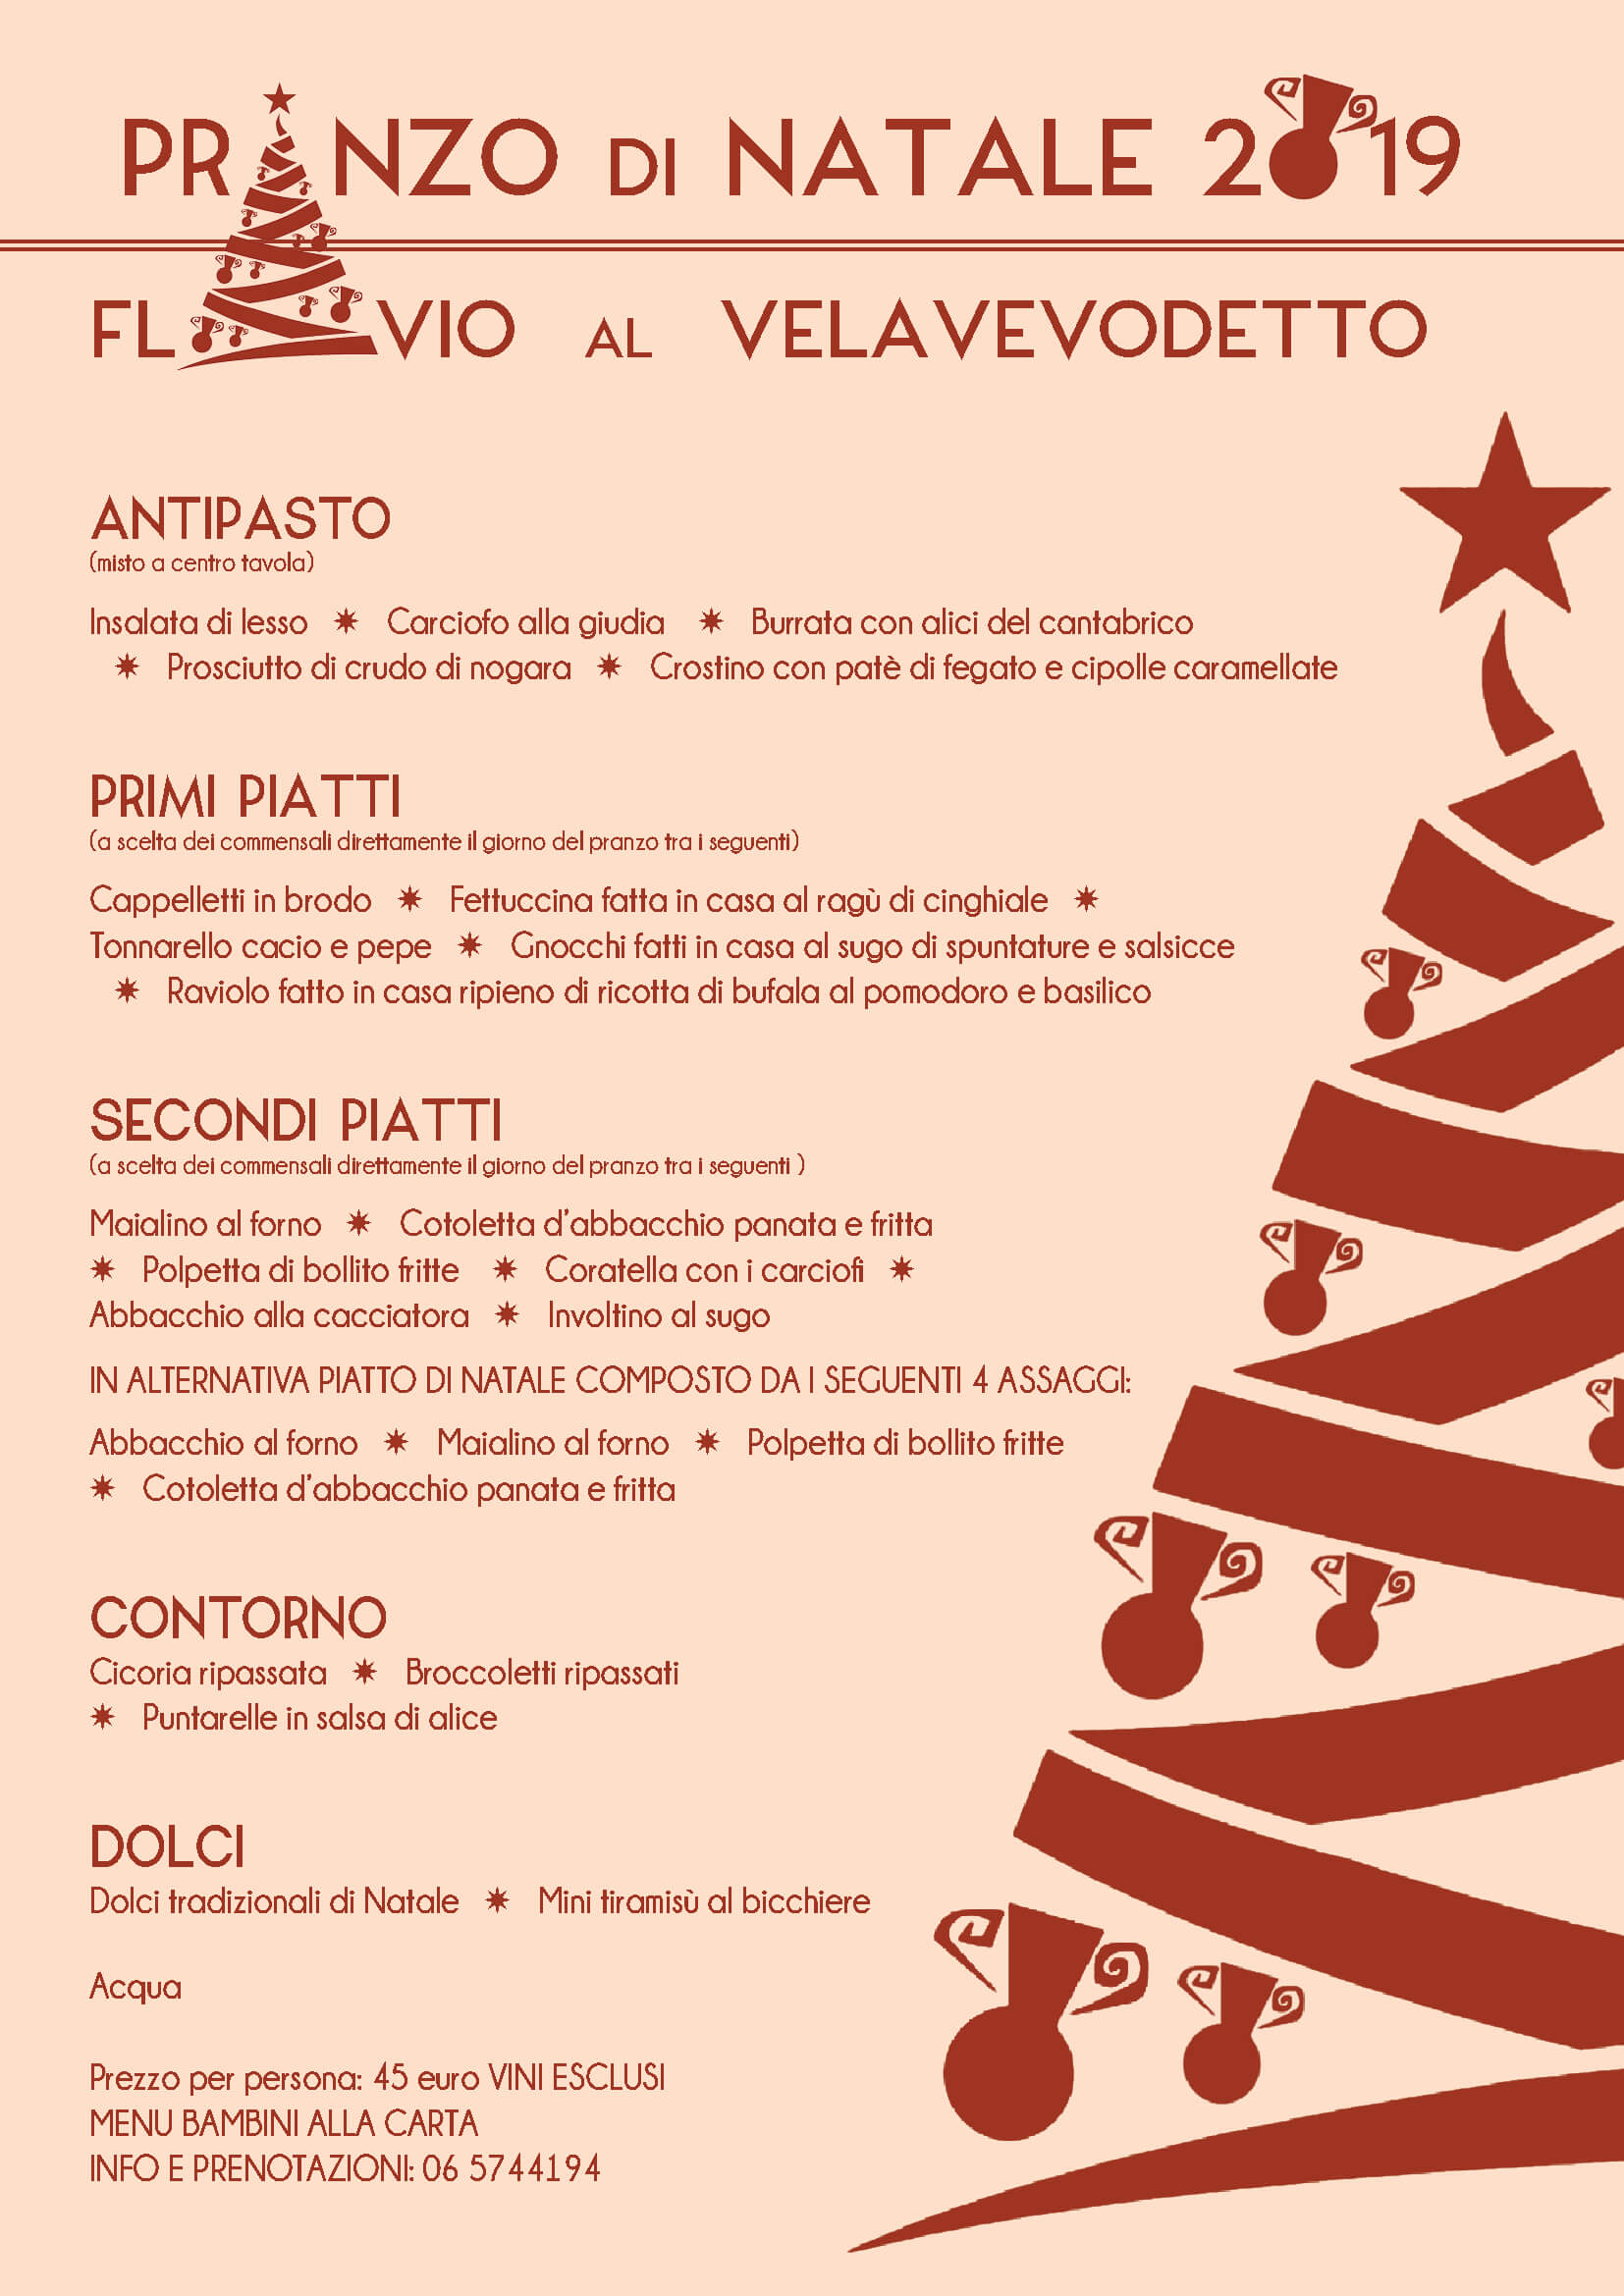 Decorazioni Menu Natale.Ristorante Velavevodetto Roma Pranzo Di Natale 2019